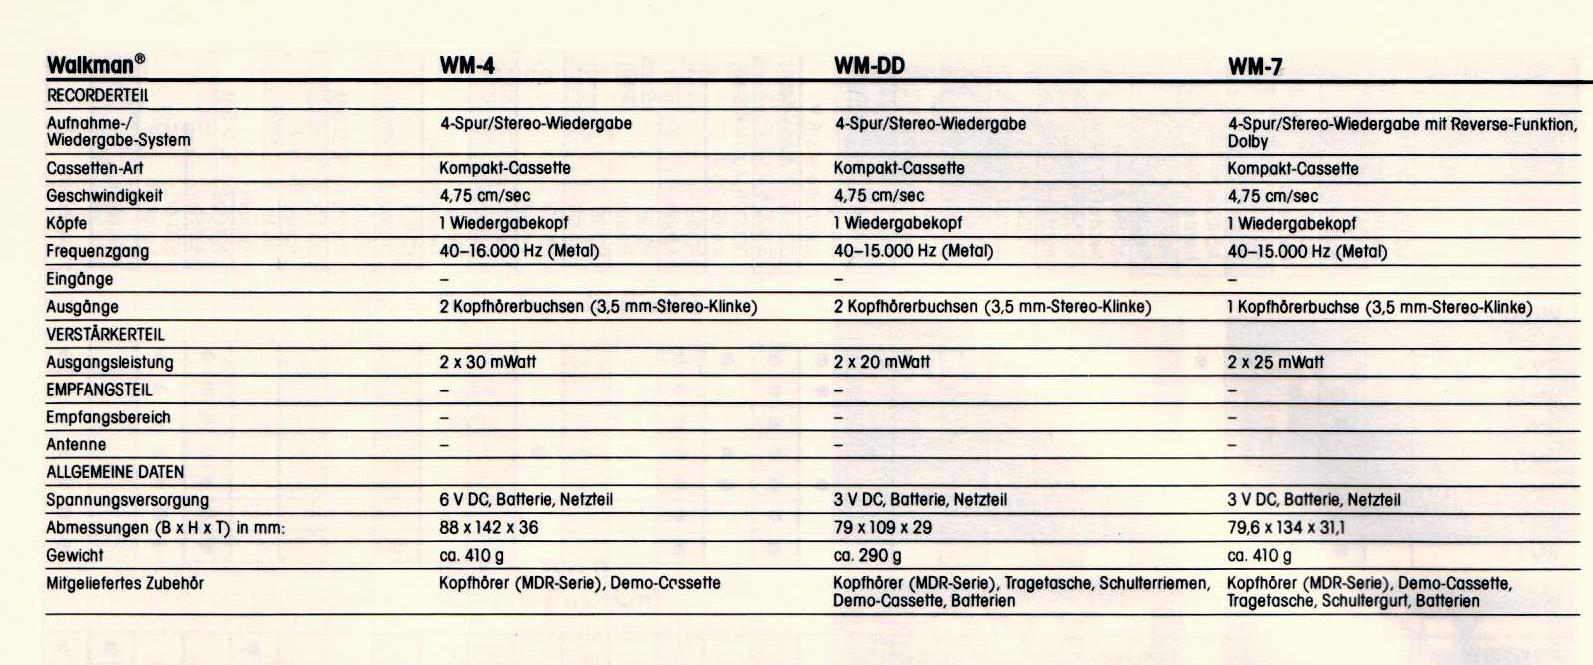 Sony WM- Daten 1984.jpg